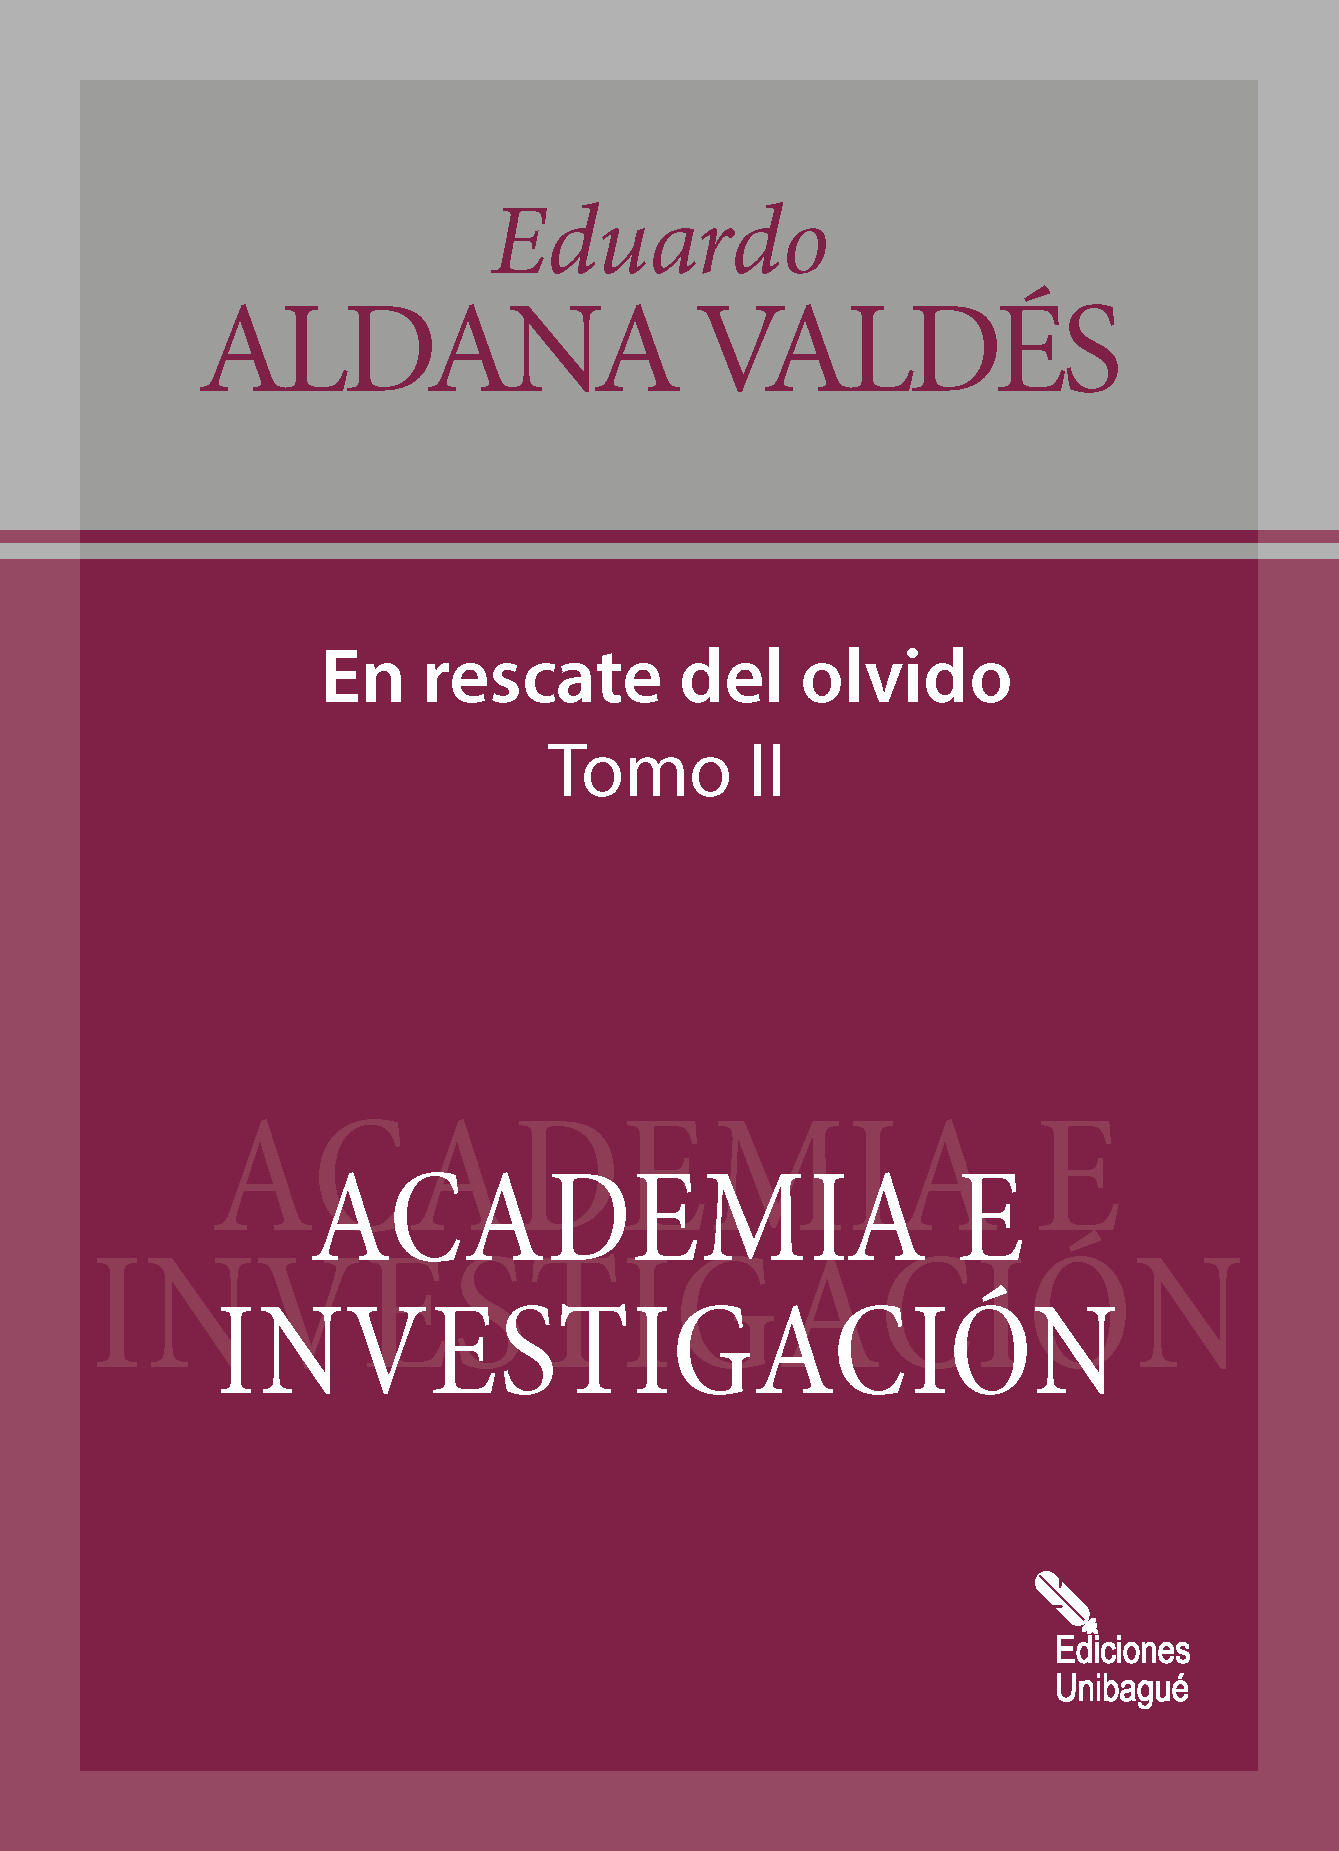 Cover of Academia e investigación 